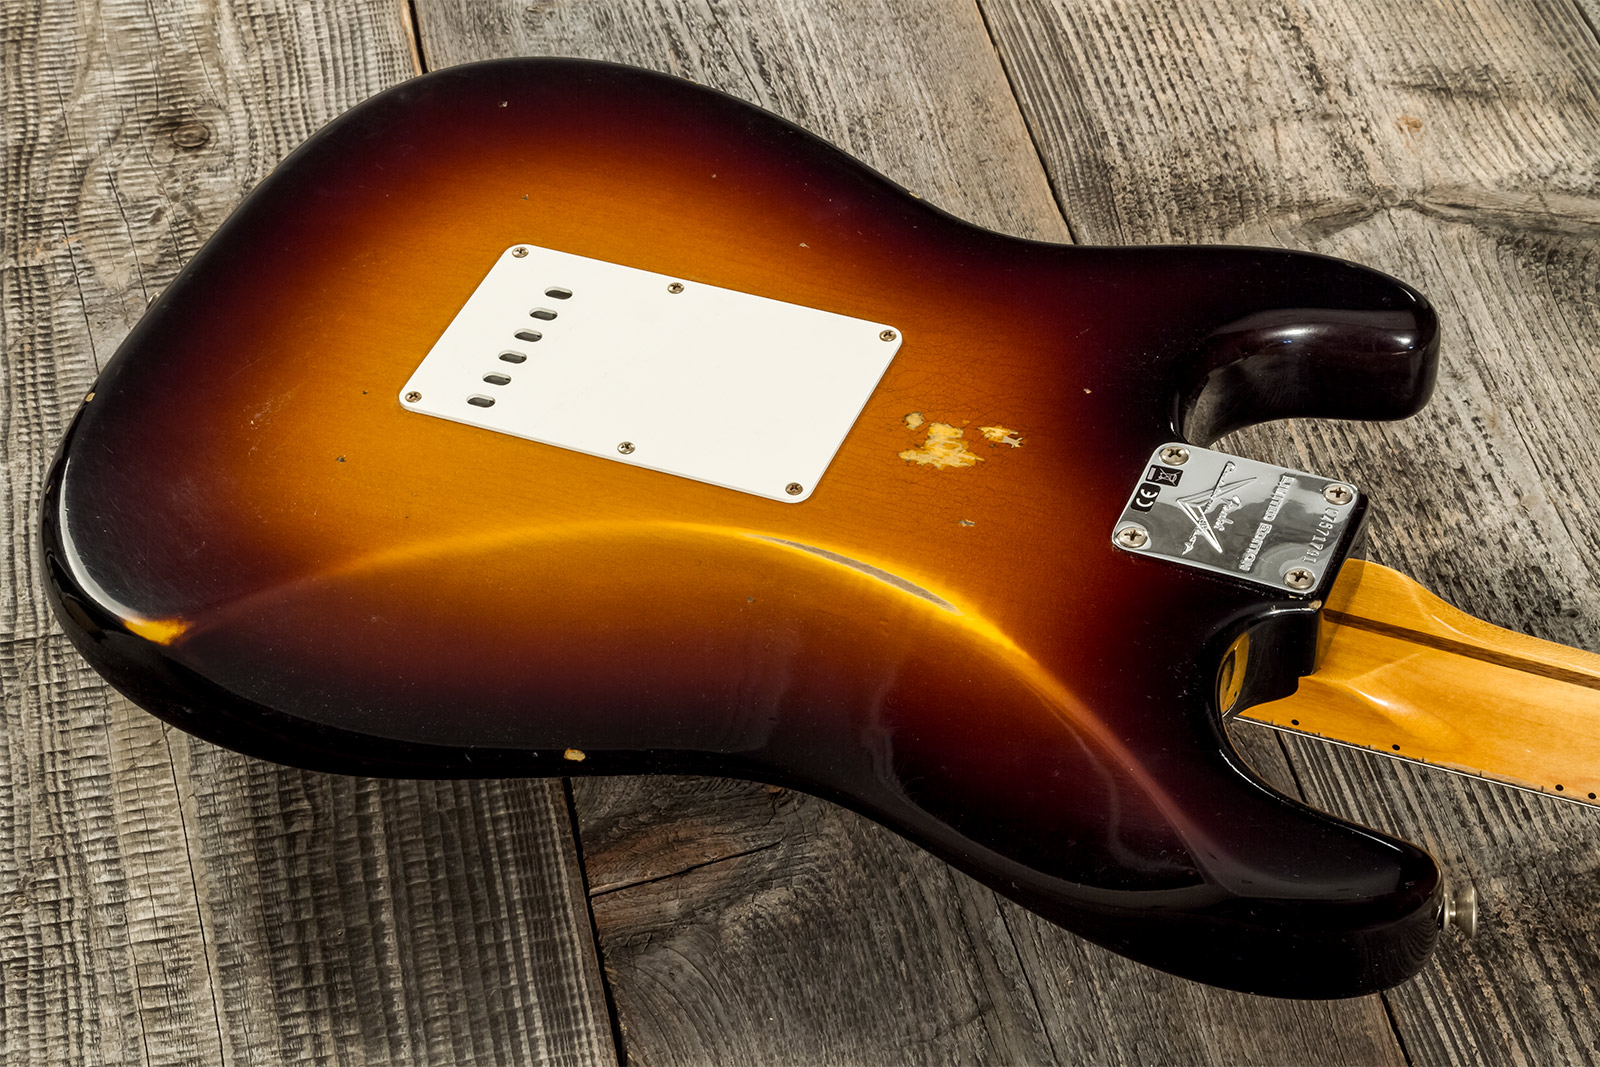 Fender Custom Shop Strat 1957 3s Trem Mn #cz571791 - Relic Wide Fade 2-color Sunburst - Str shape electric guitar - Variation 6